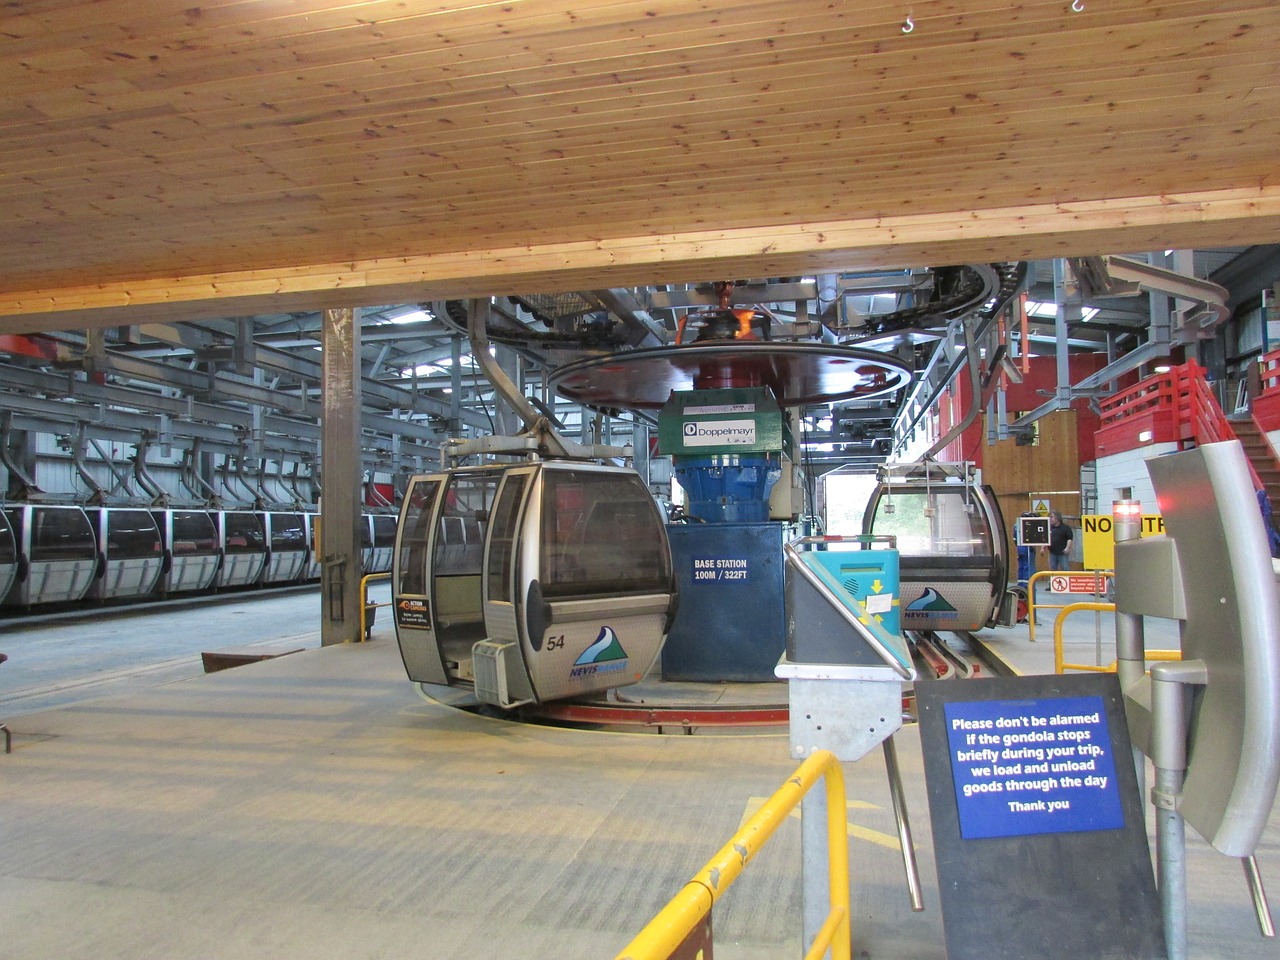 scotland ski lift gondola free photo